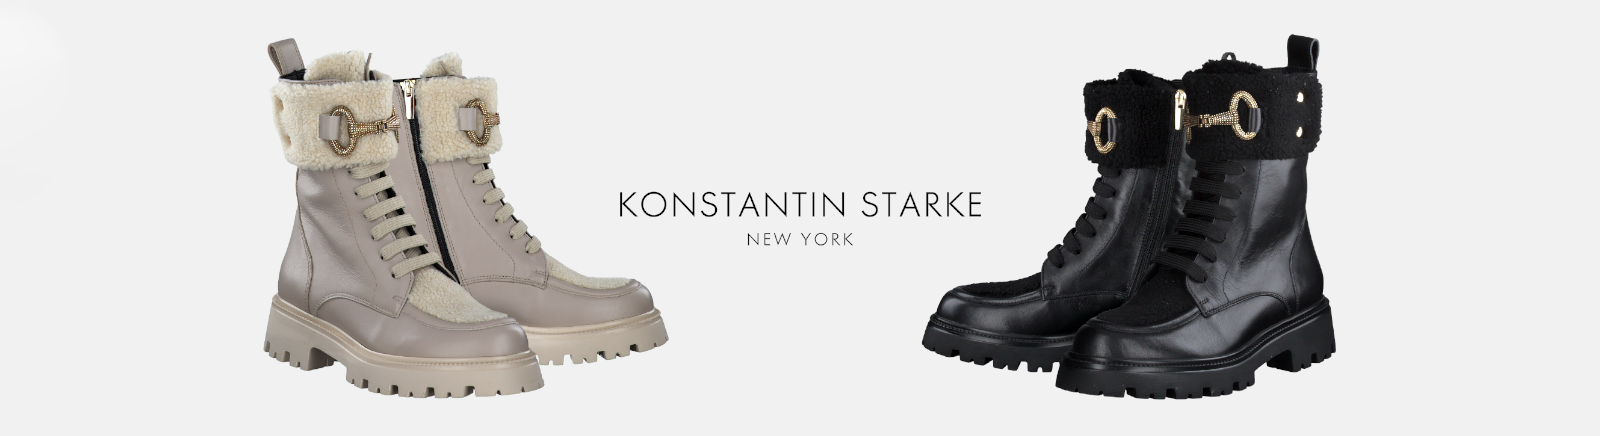 Prange: Konstantin Starke Herren Boots online shoppen